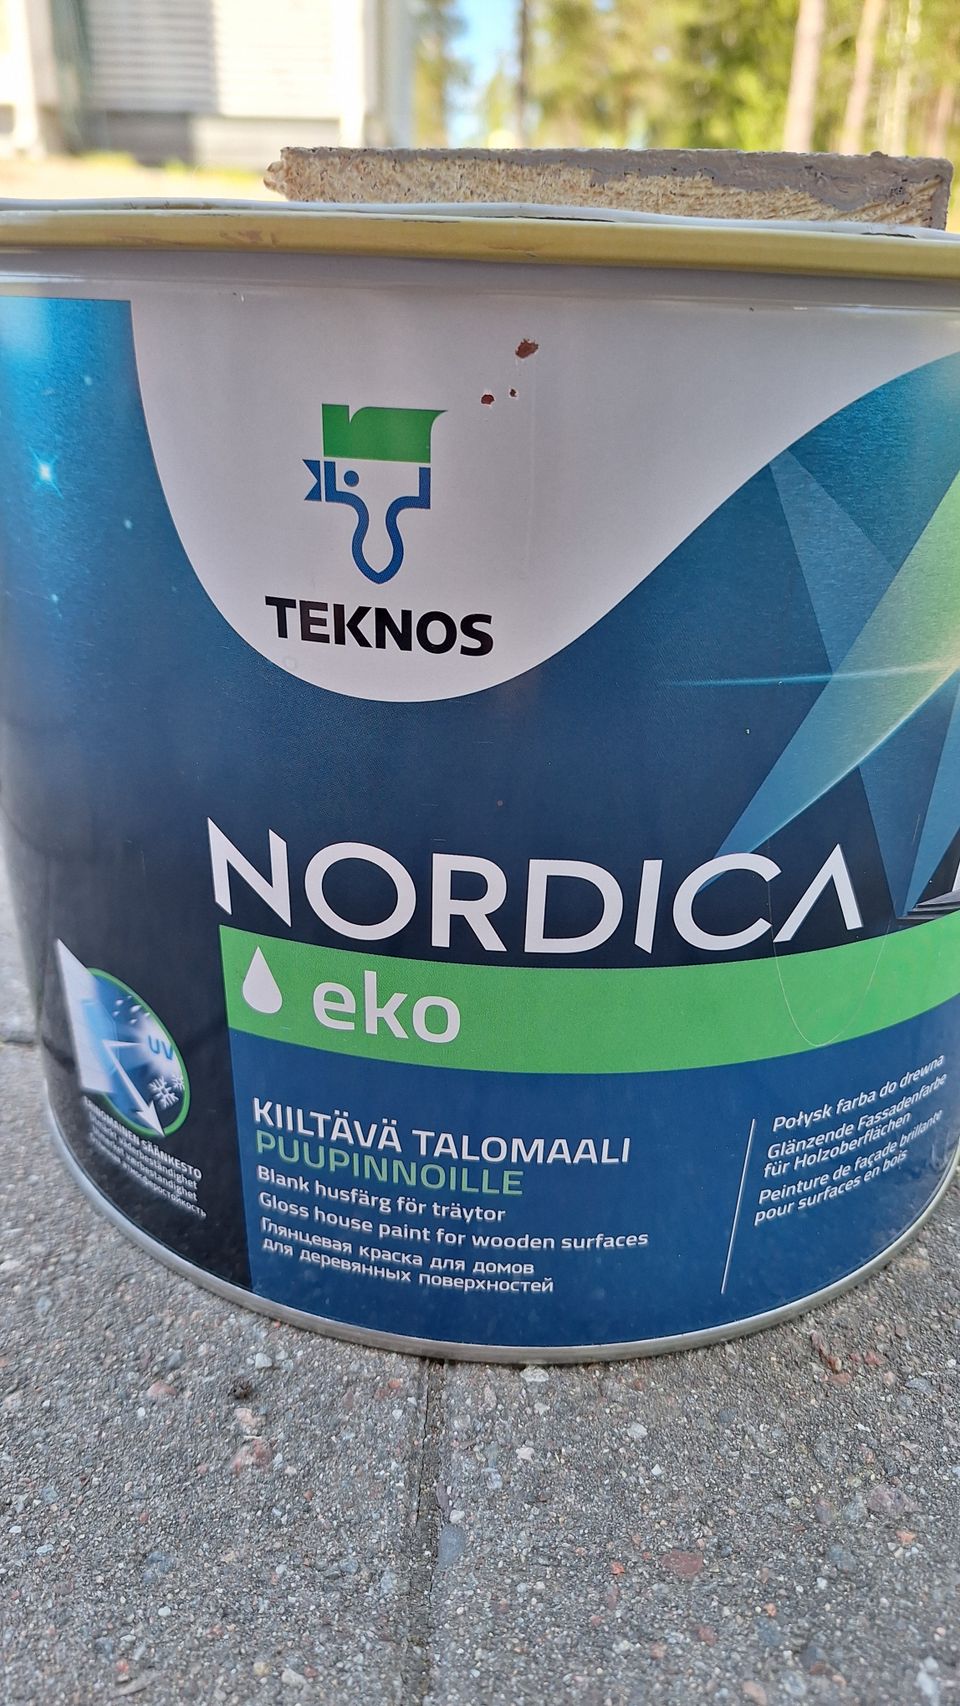 Talomaali Teknos Nordica Eco 9l